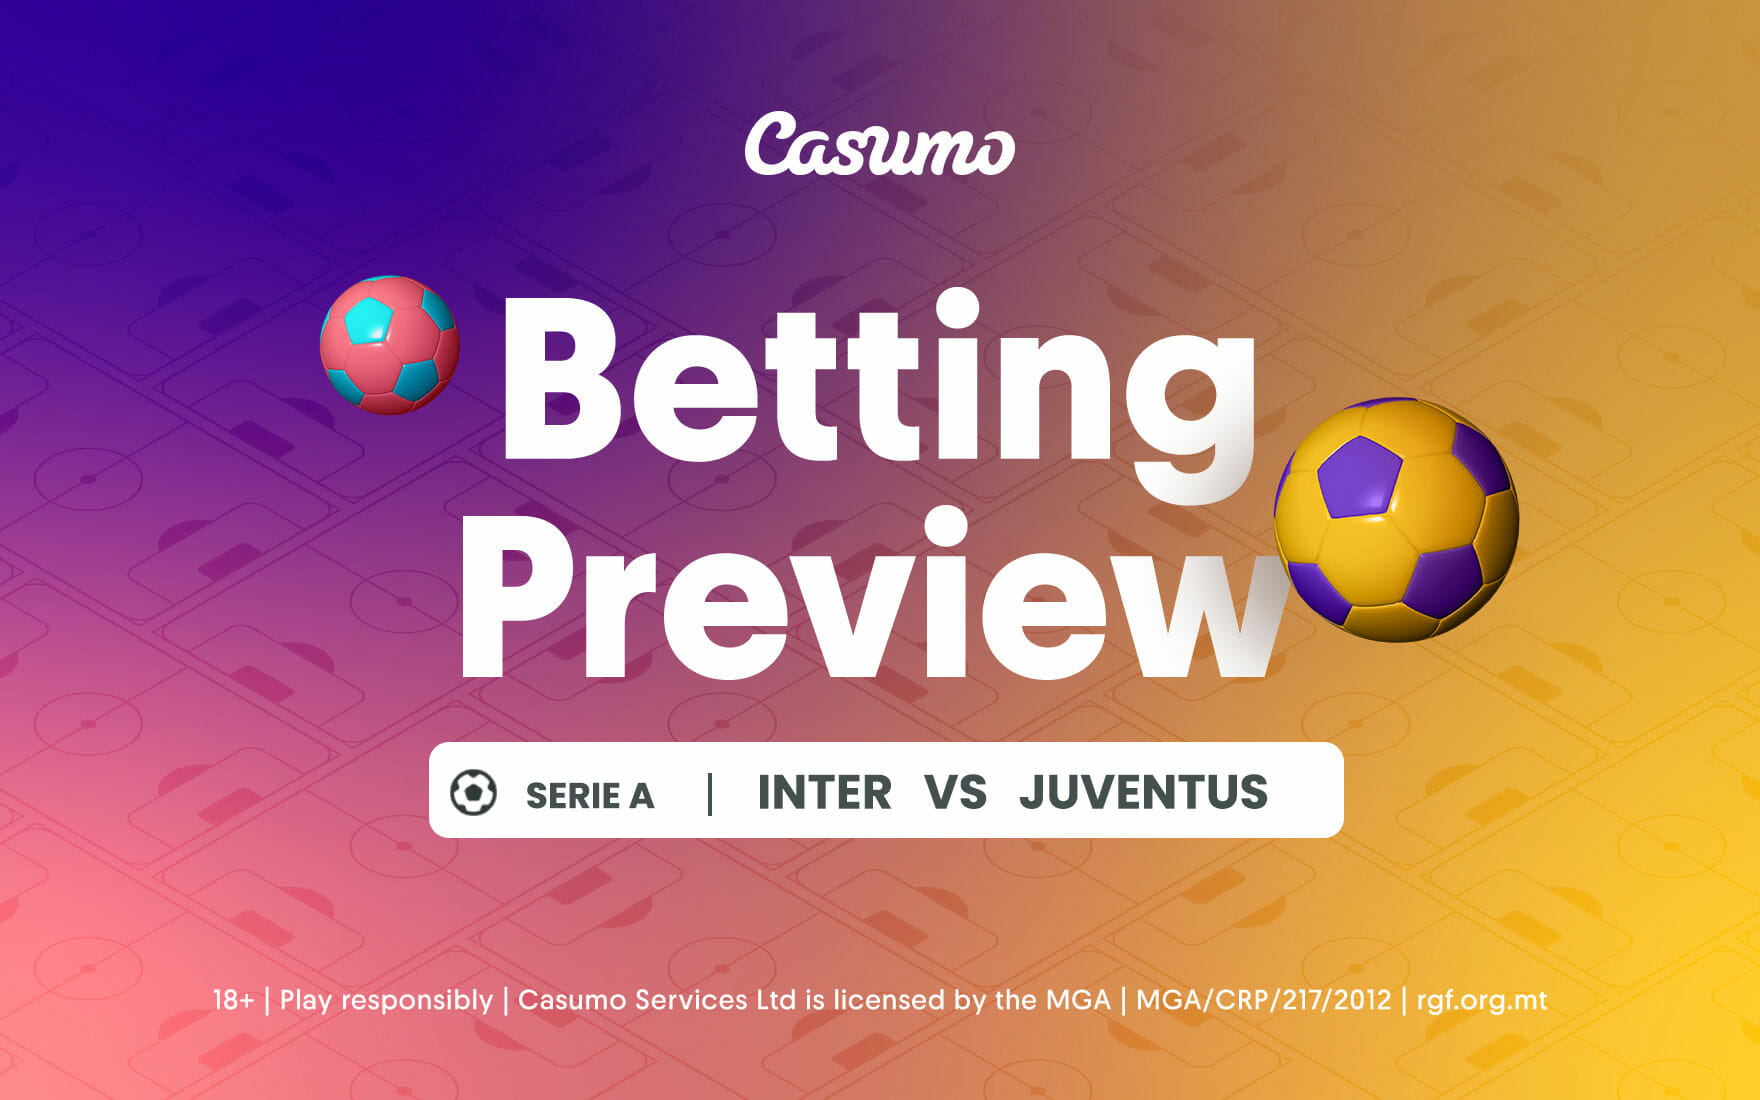 Inter vs Juventus betting tips